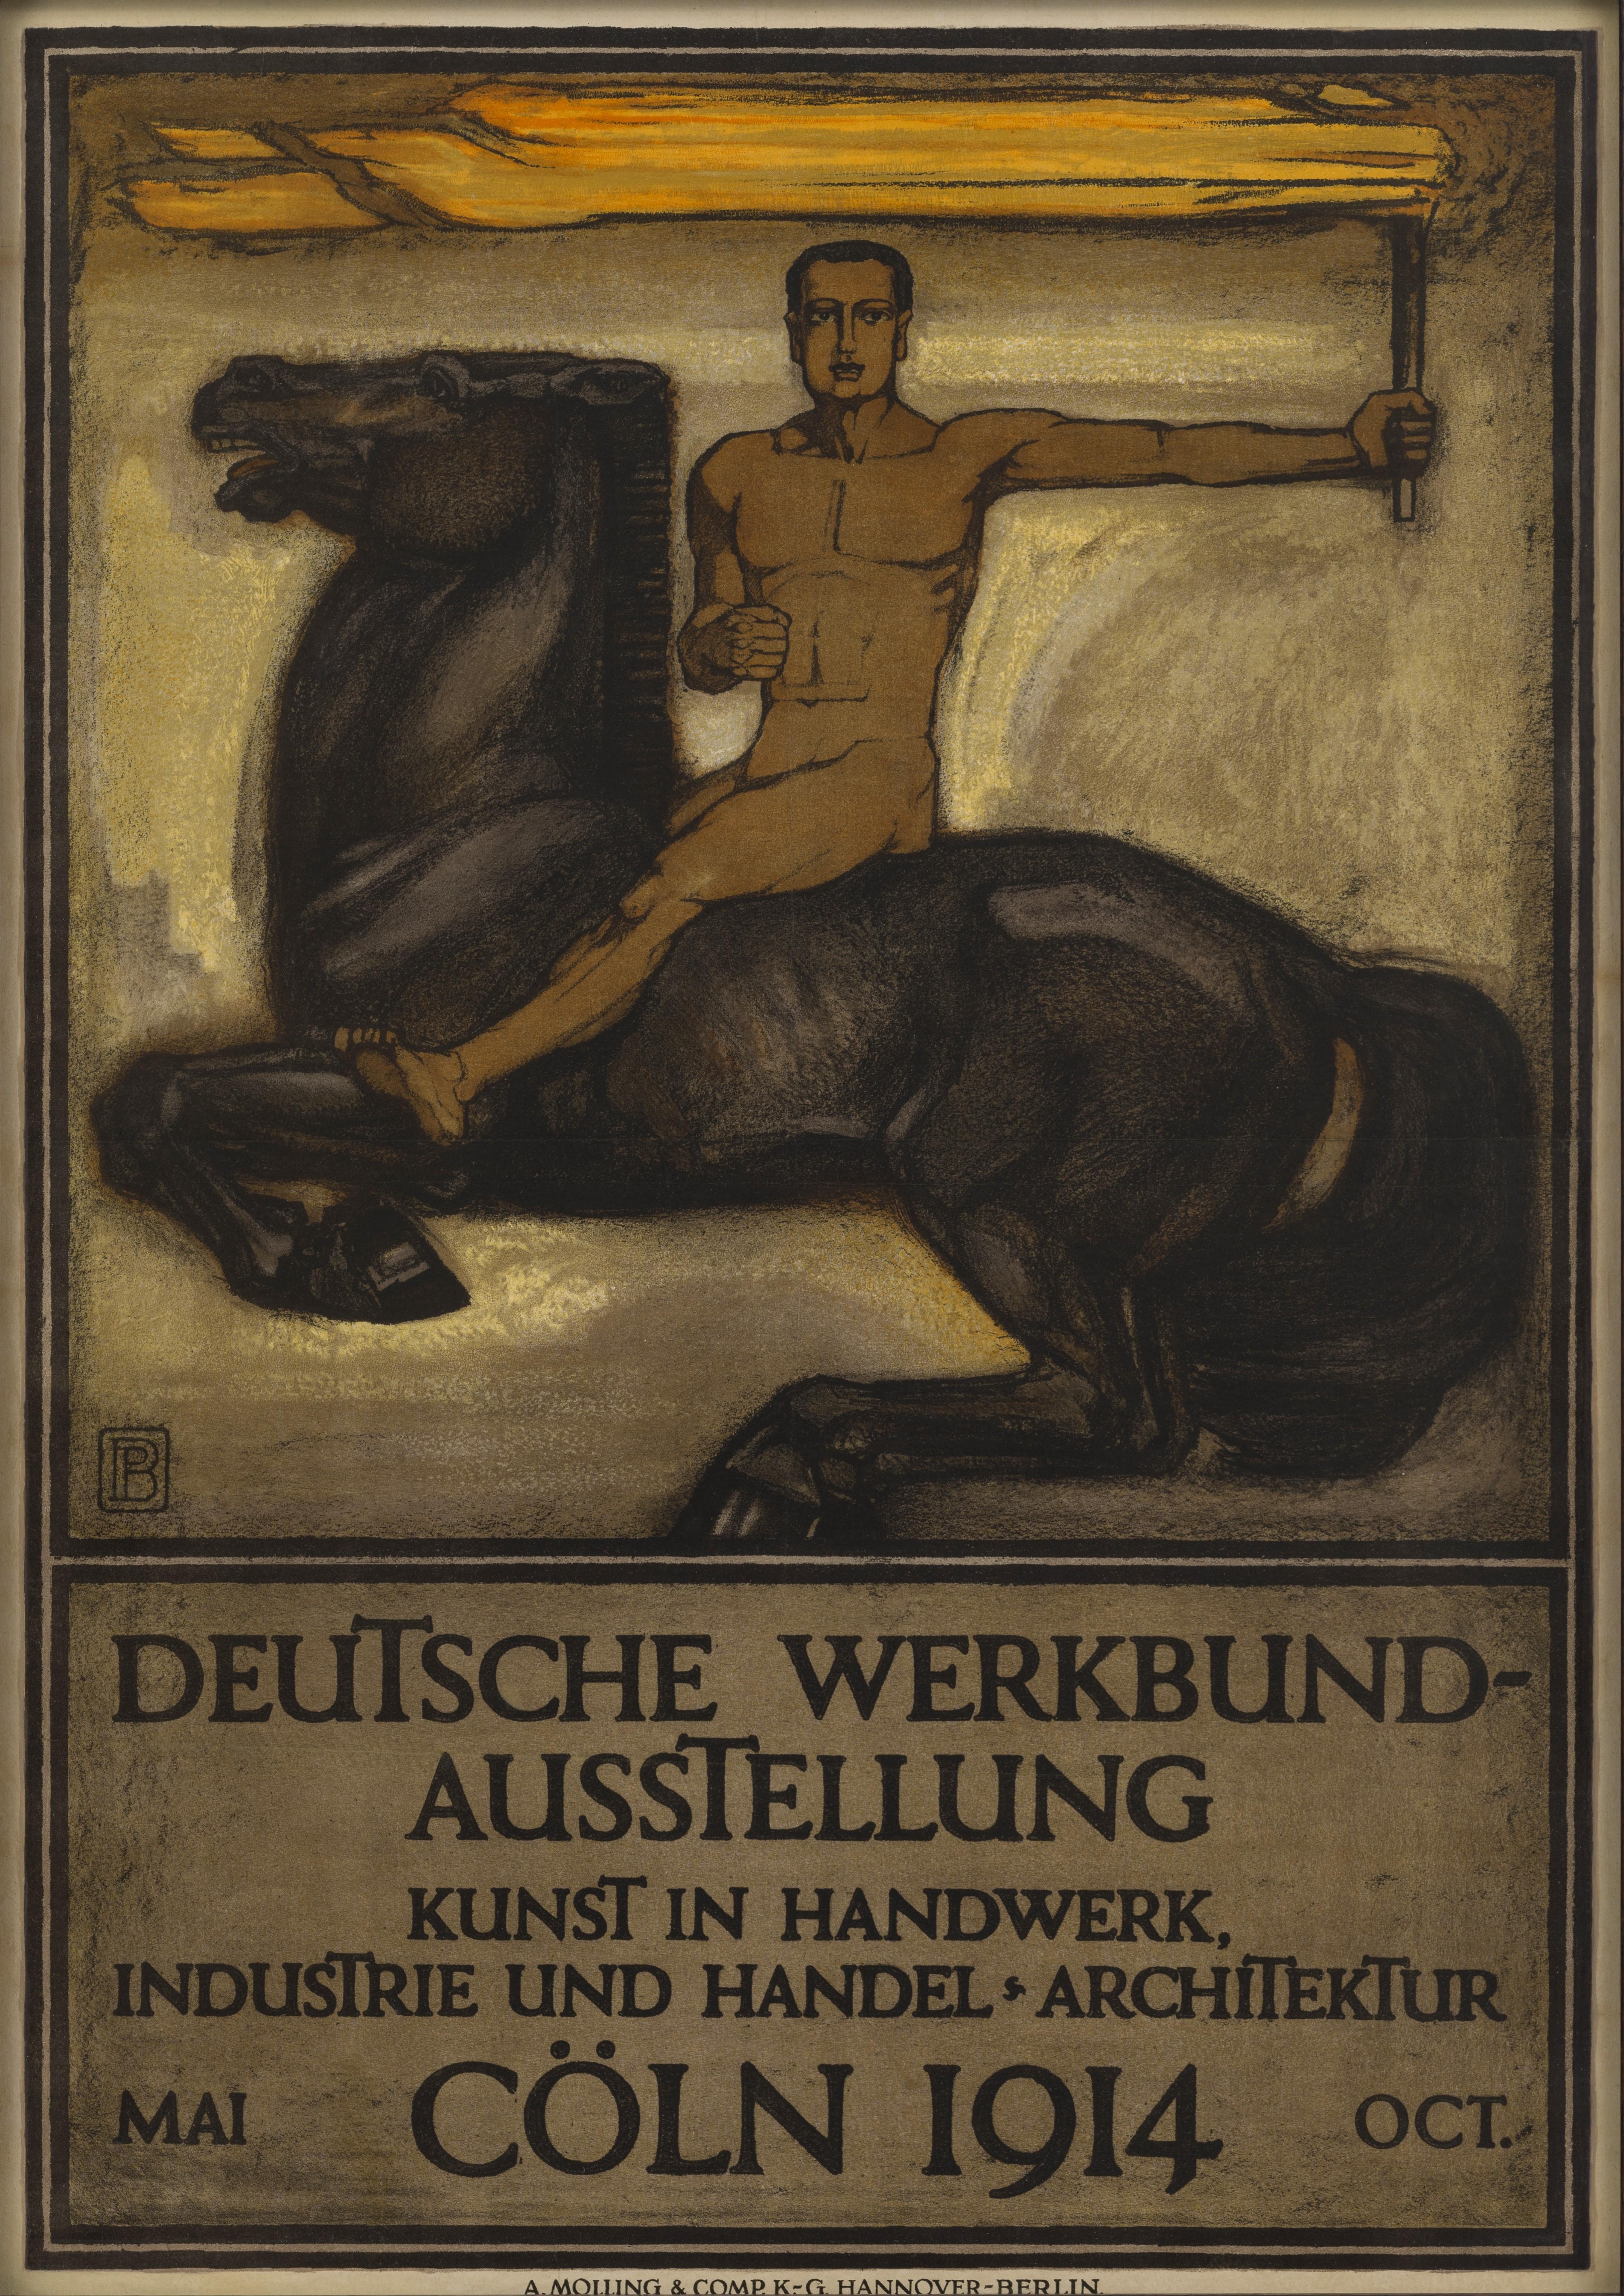 Deutsche Werkbund-Ausstellung (German Workers Union Exhibition Art) - Print by Peter Behrens 